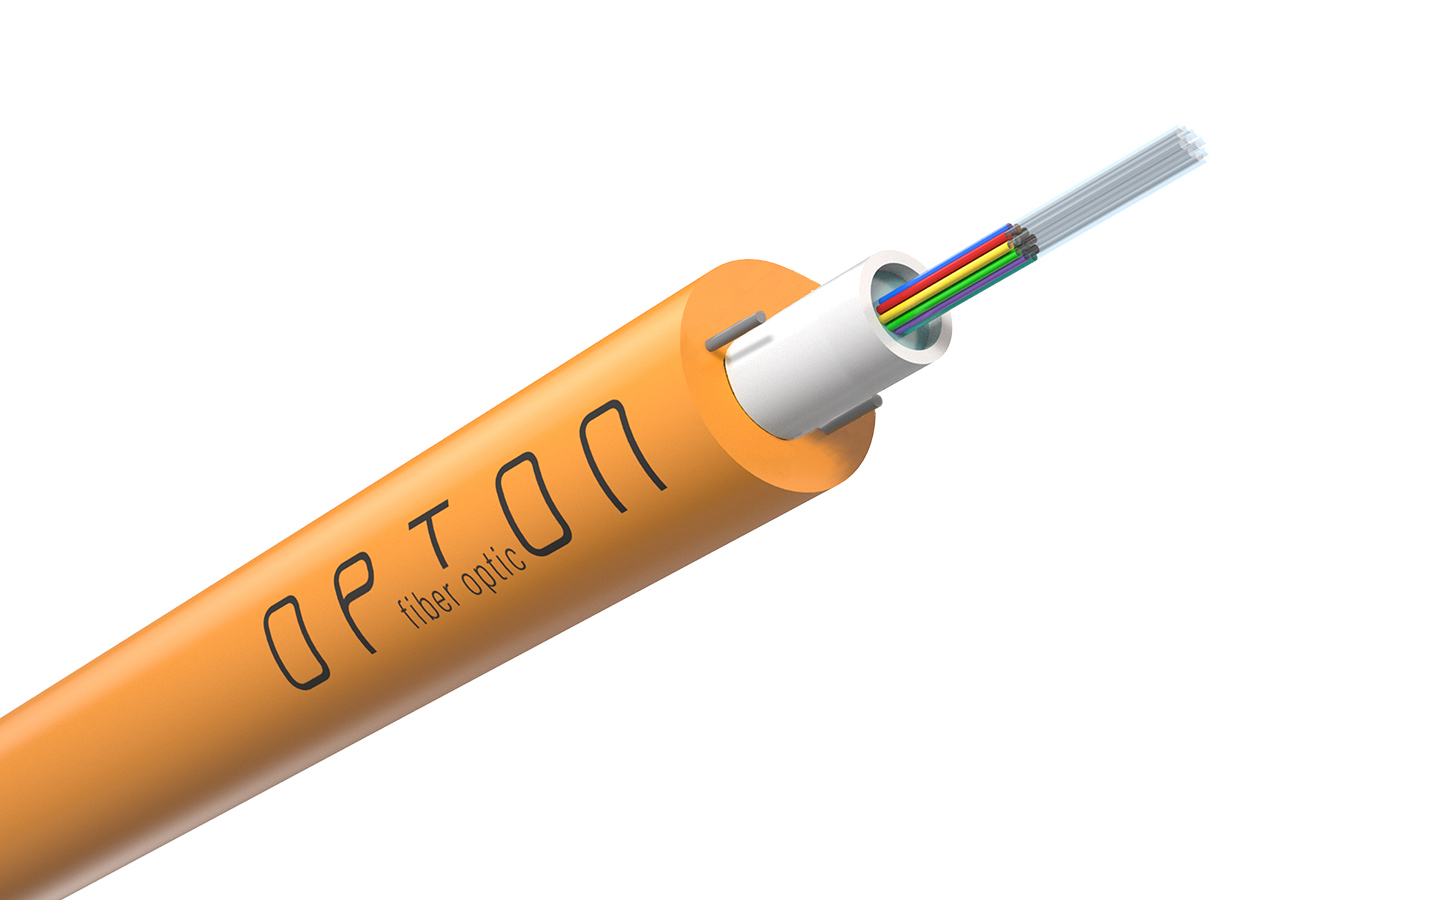 Opton DAC Z-XOTKtcd doziemny kabel światłowodowy, 2 włókna G652D